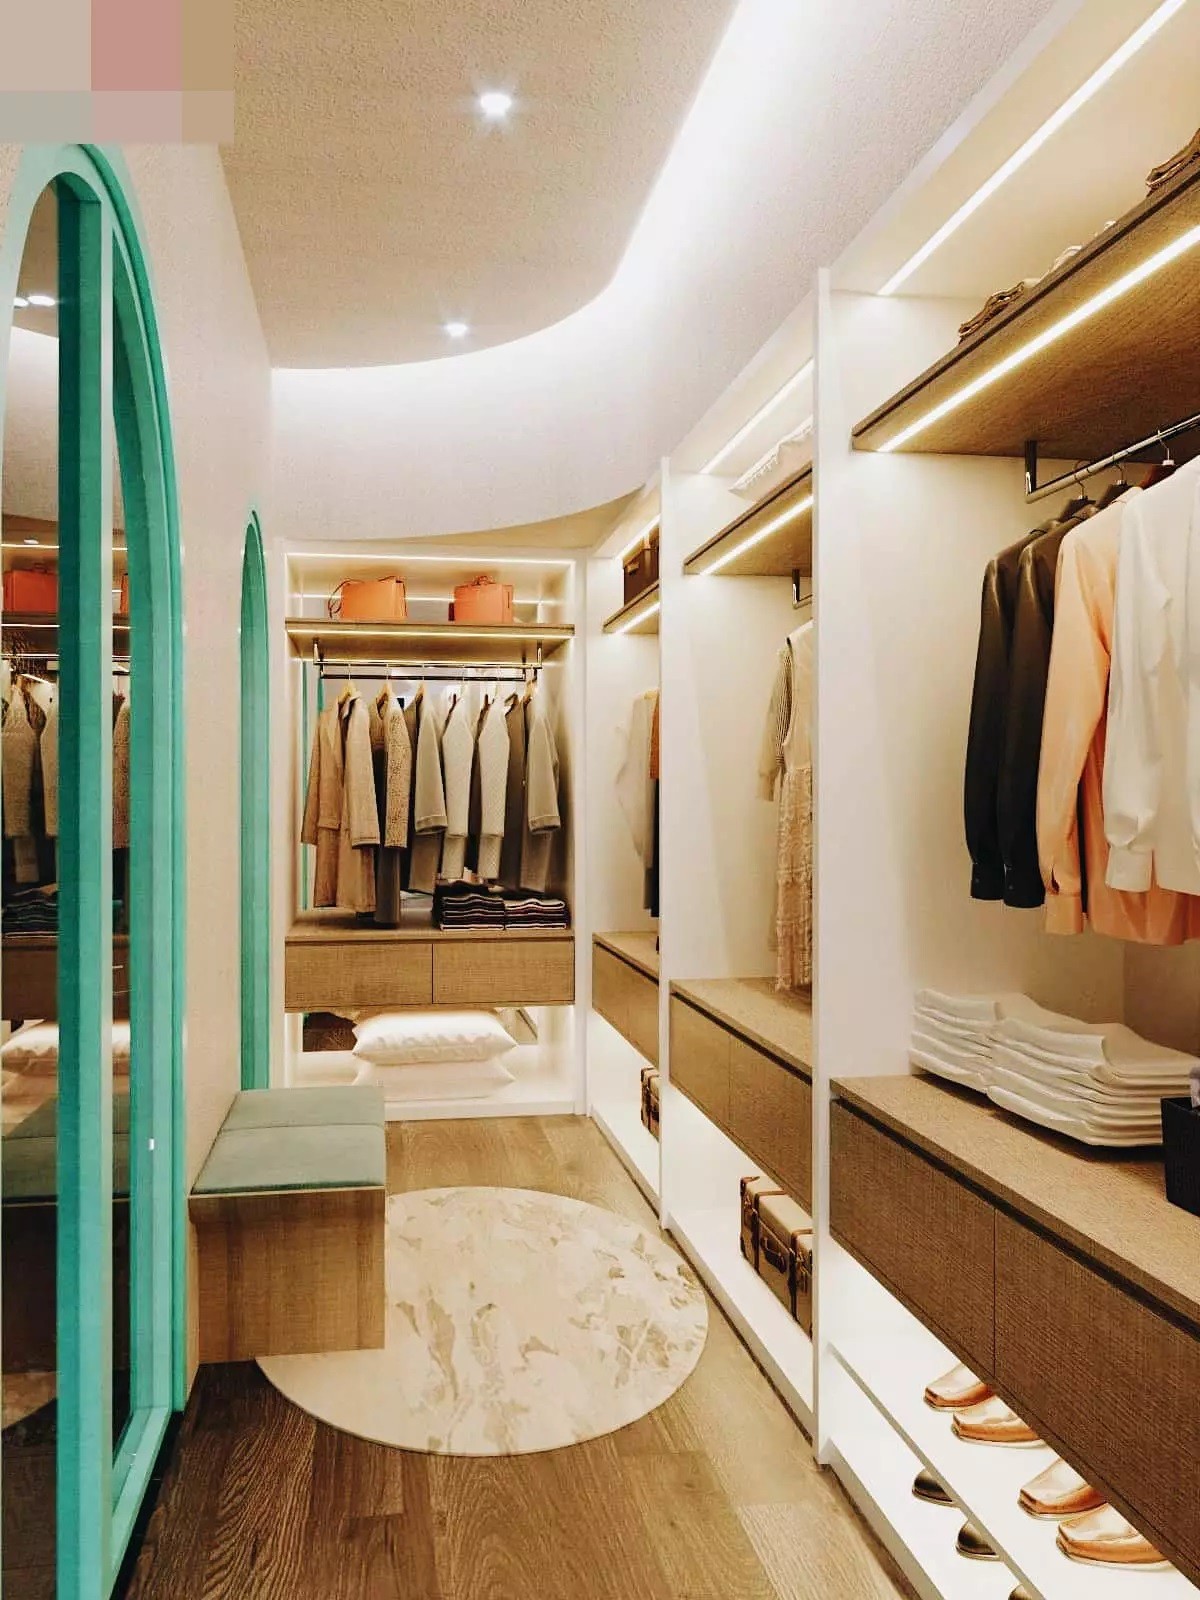 
Phòng thay đồ có hệ tủ mở kéo dài, trưng bày nhiều trang phục và đồ hiệu đắt đỏ, thể hiện đẳng cấp của chủ nhân&nbsp;
